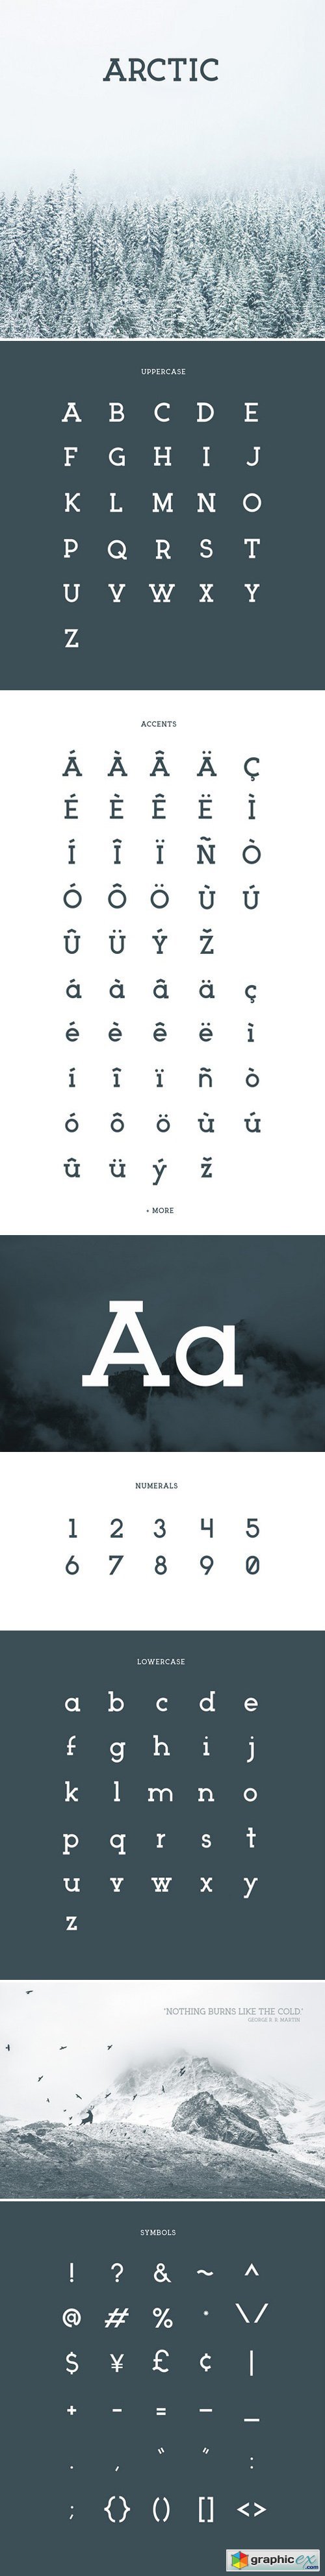 ARCTIC Typeface